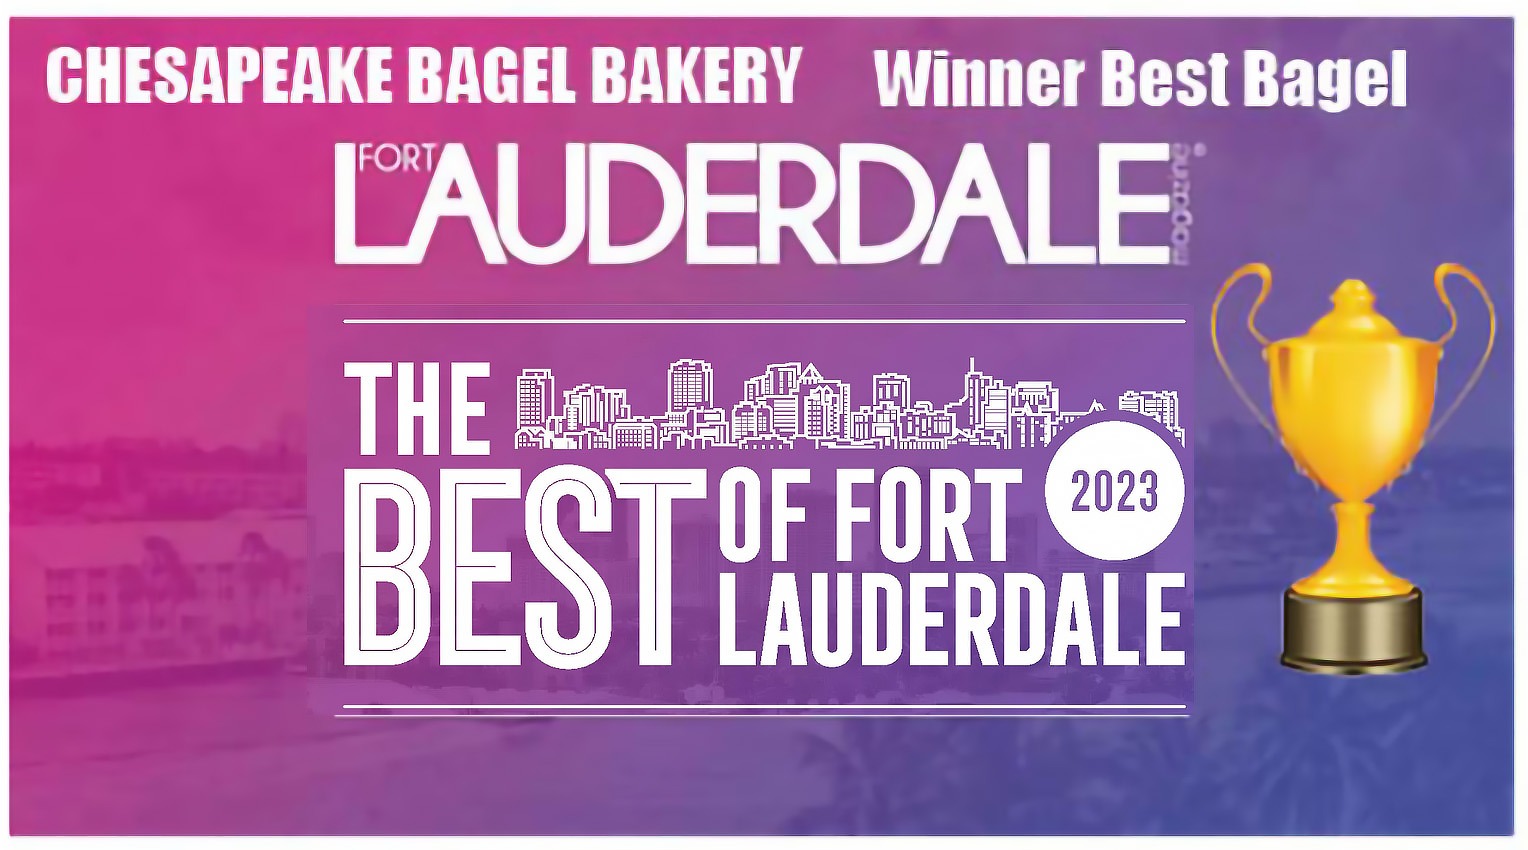 Chesapeake best bagel of Fort Lauderdale winner award in 2023